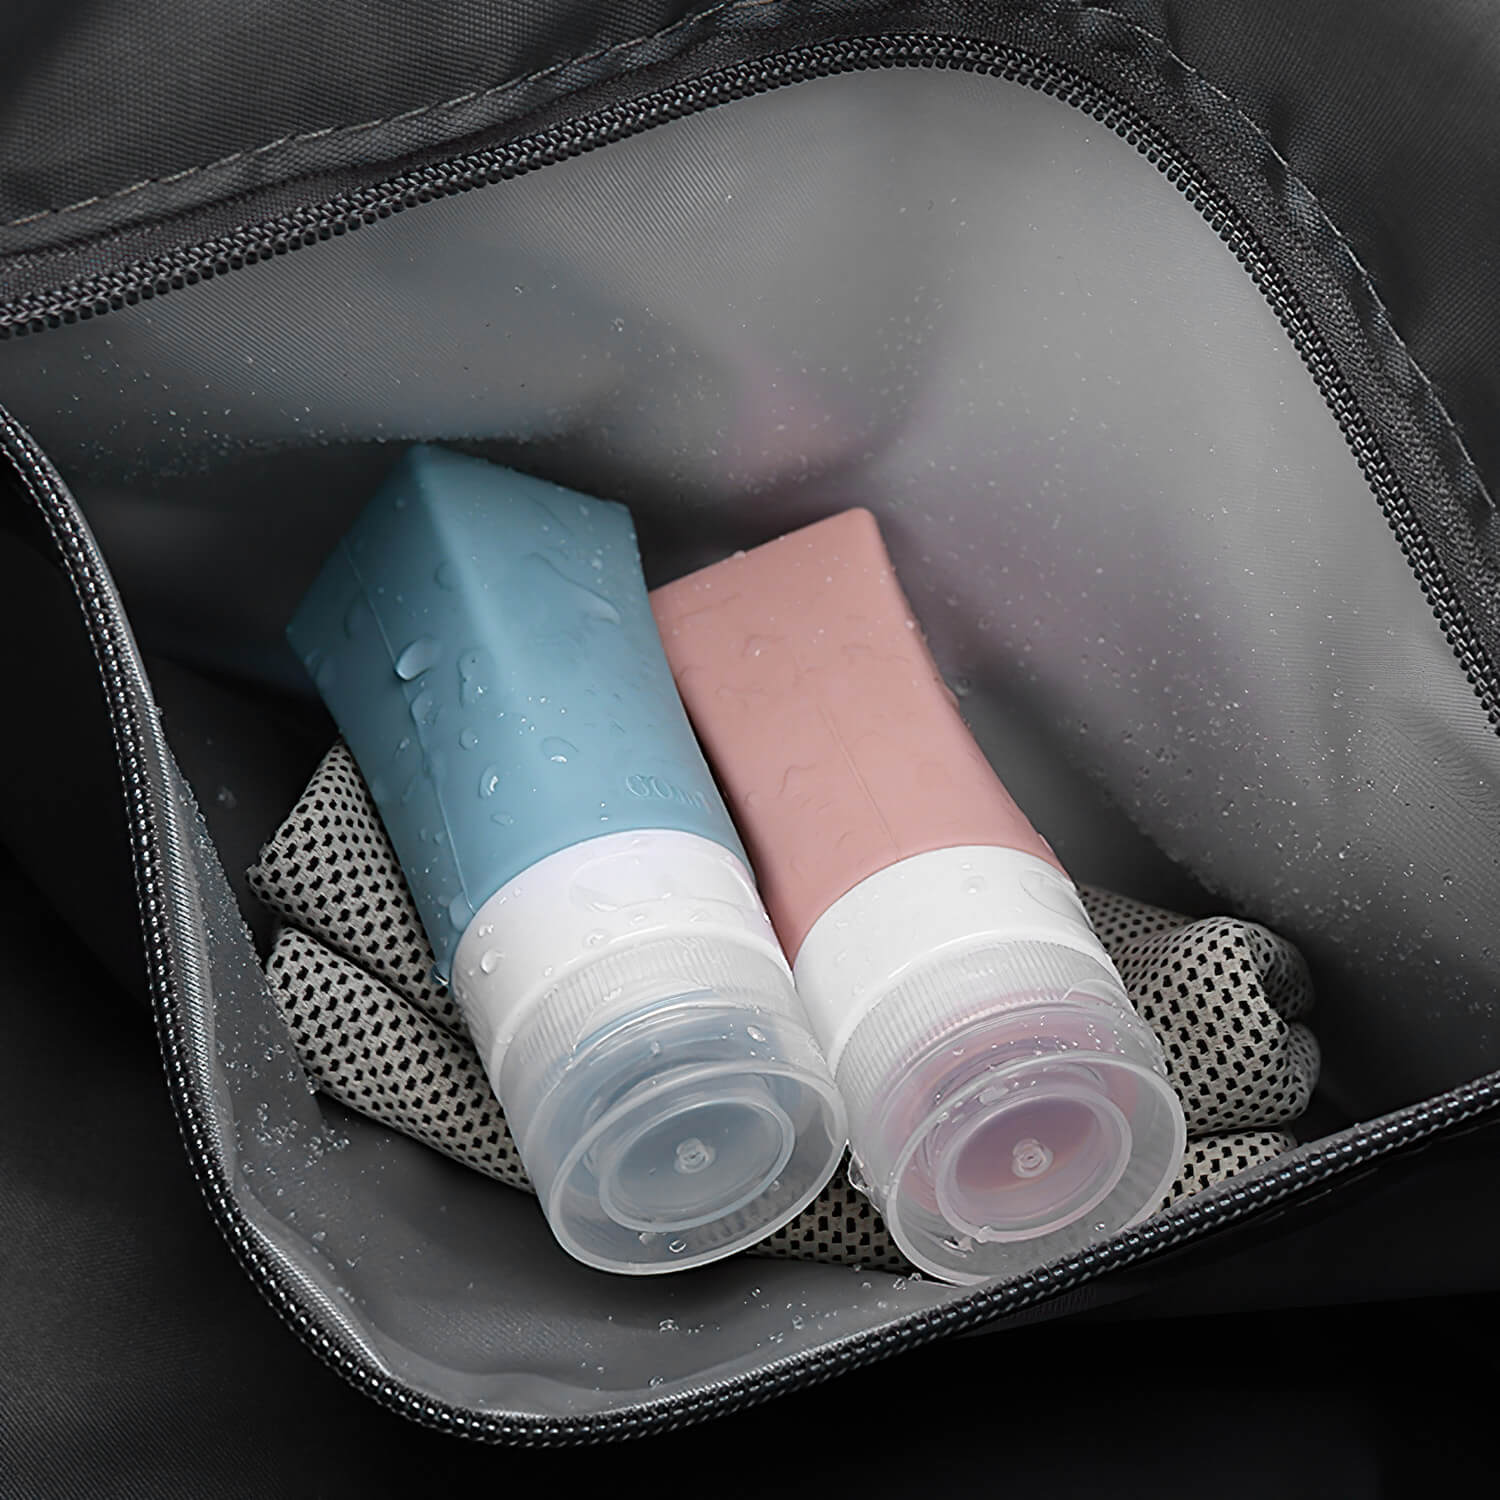 Foldable & Expandable Travel Bag